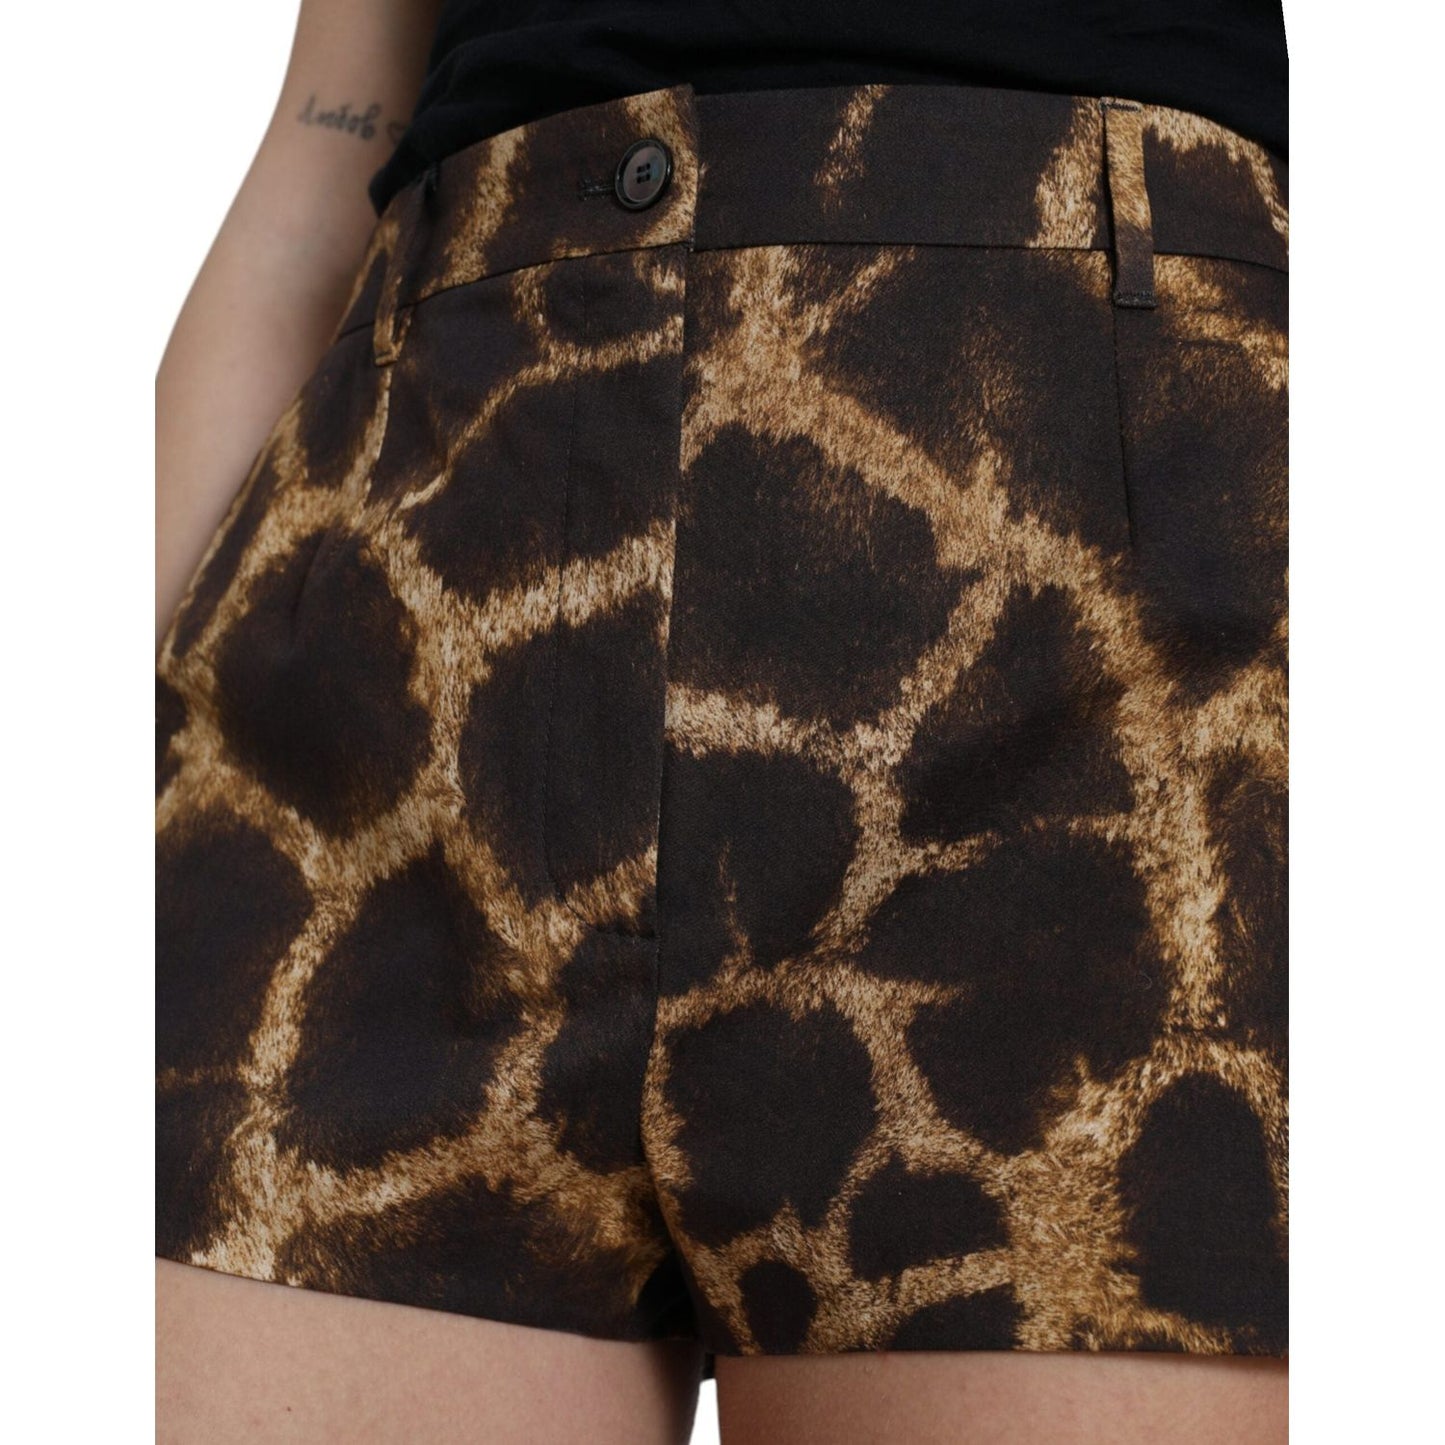 Dolce & Gabbana High Waist Giraffe Print Shorts brown-giraffe-high-waist-hot-pants-shorts